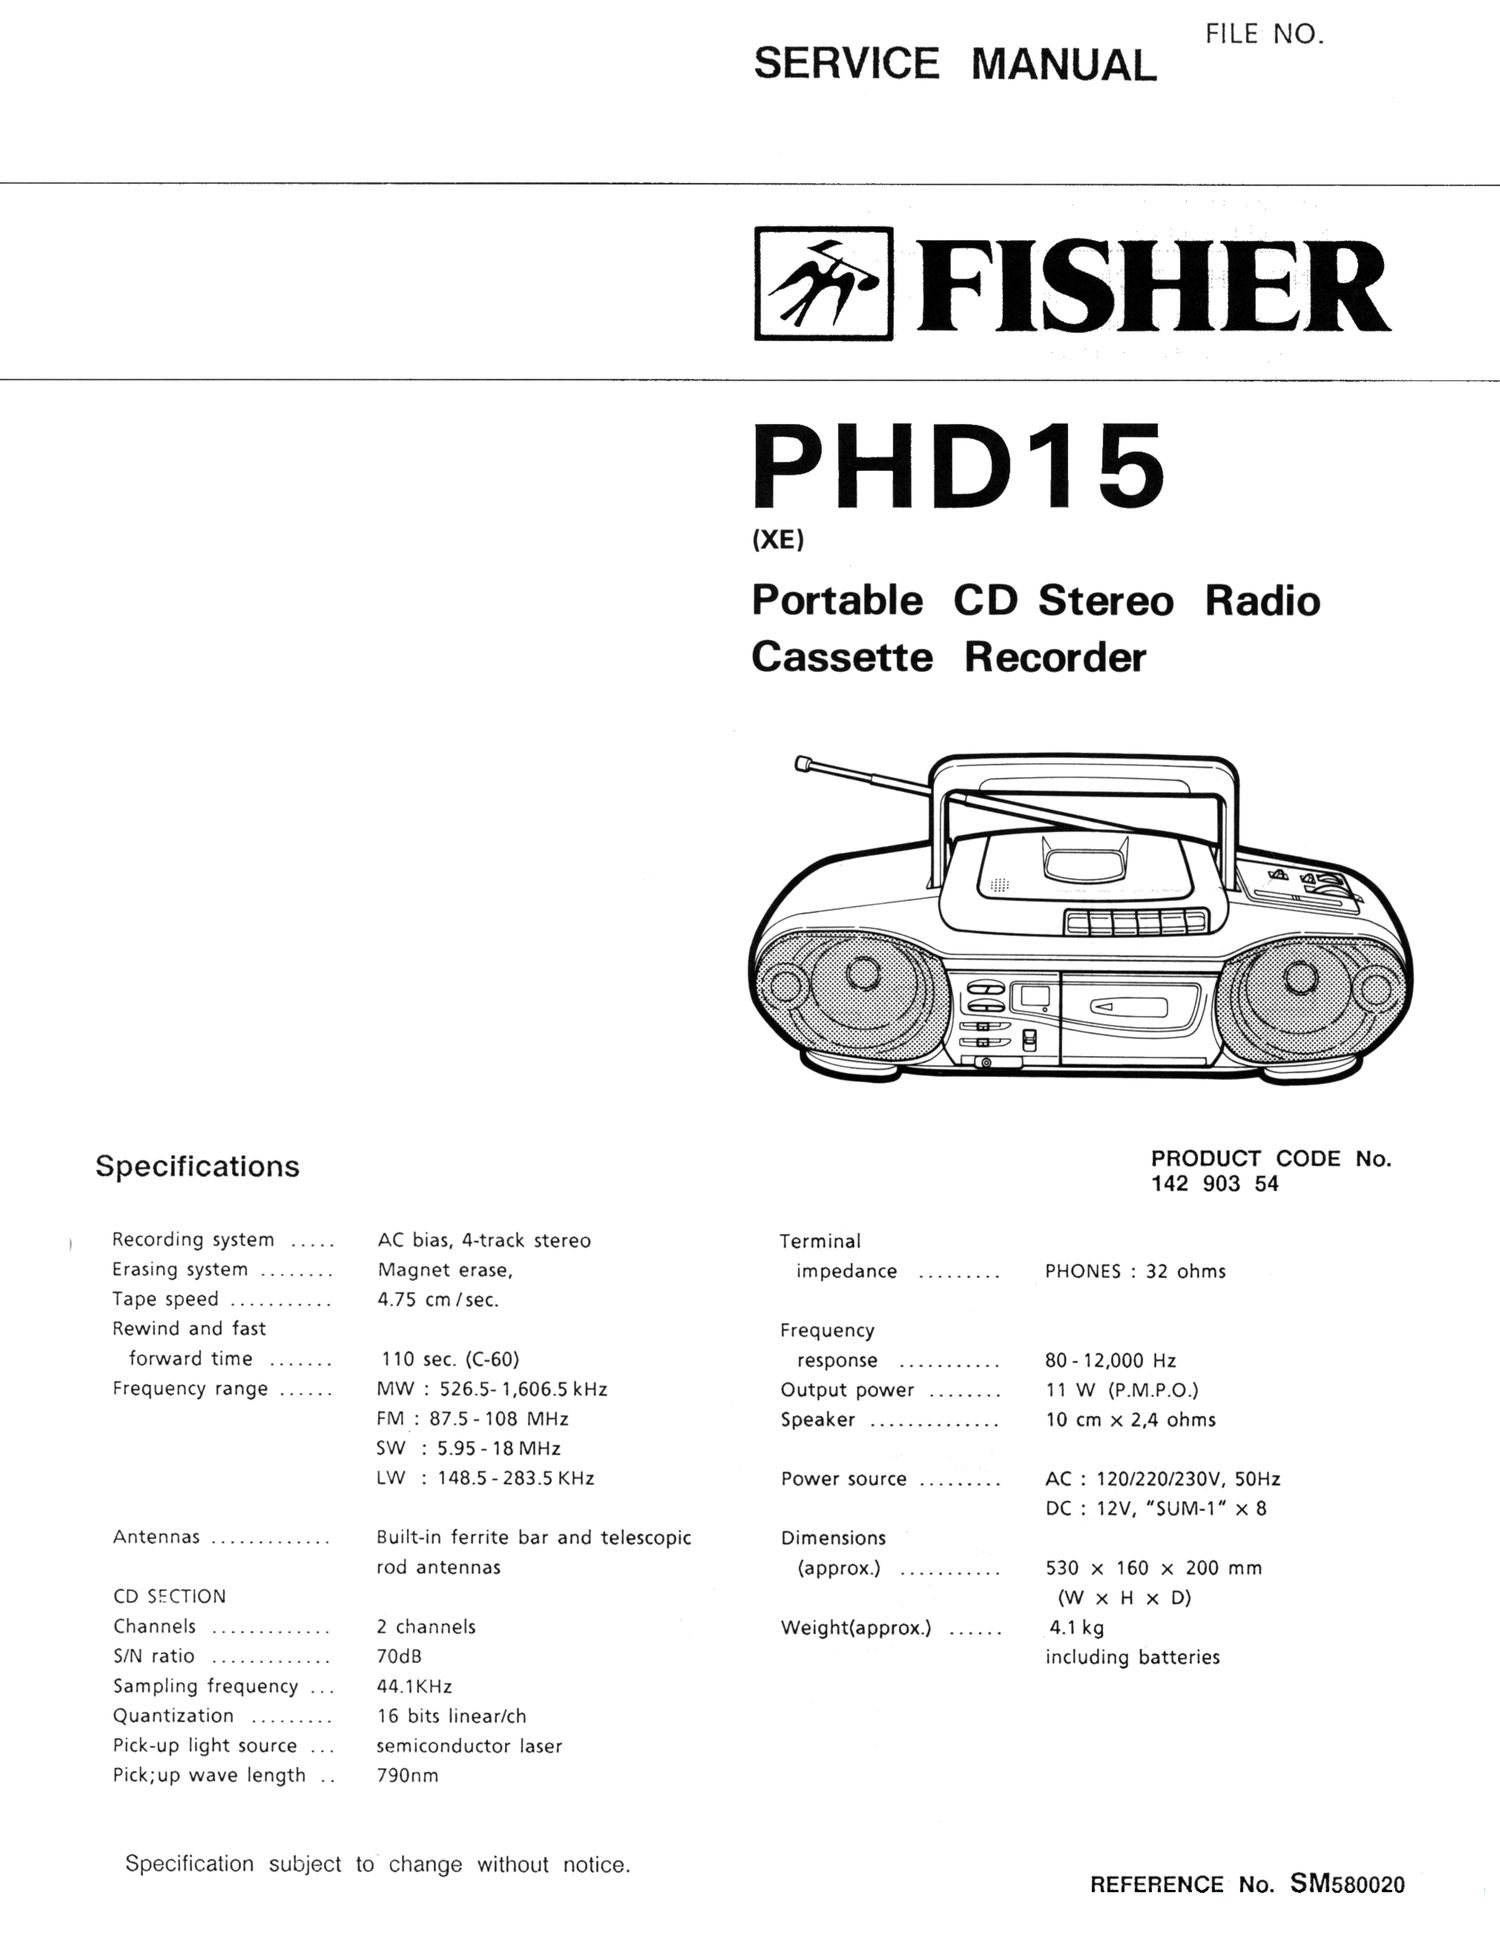 Fisher PHD 15 Schematic